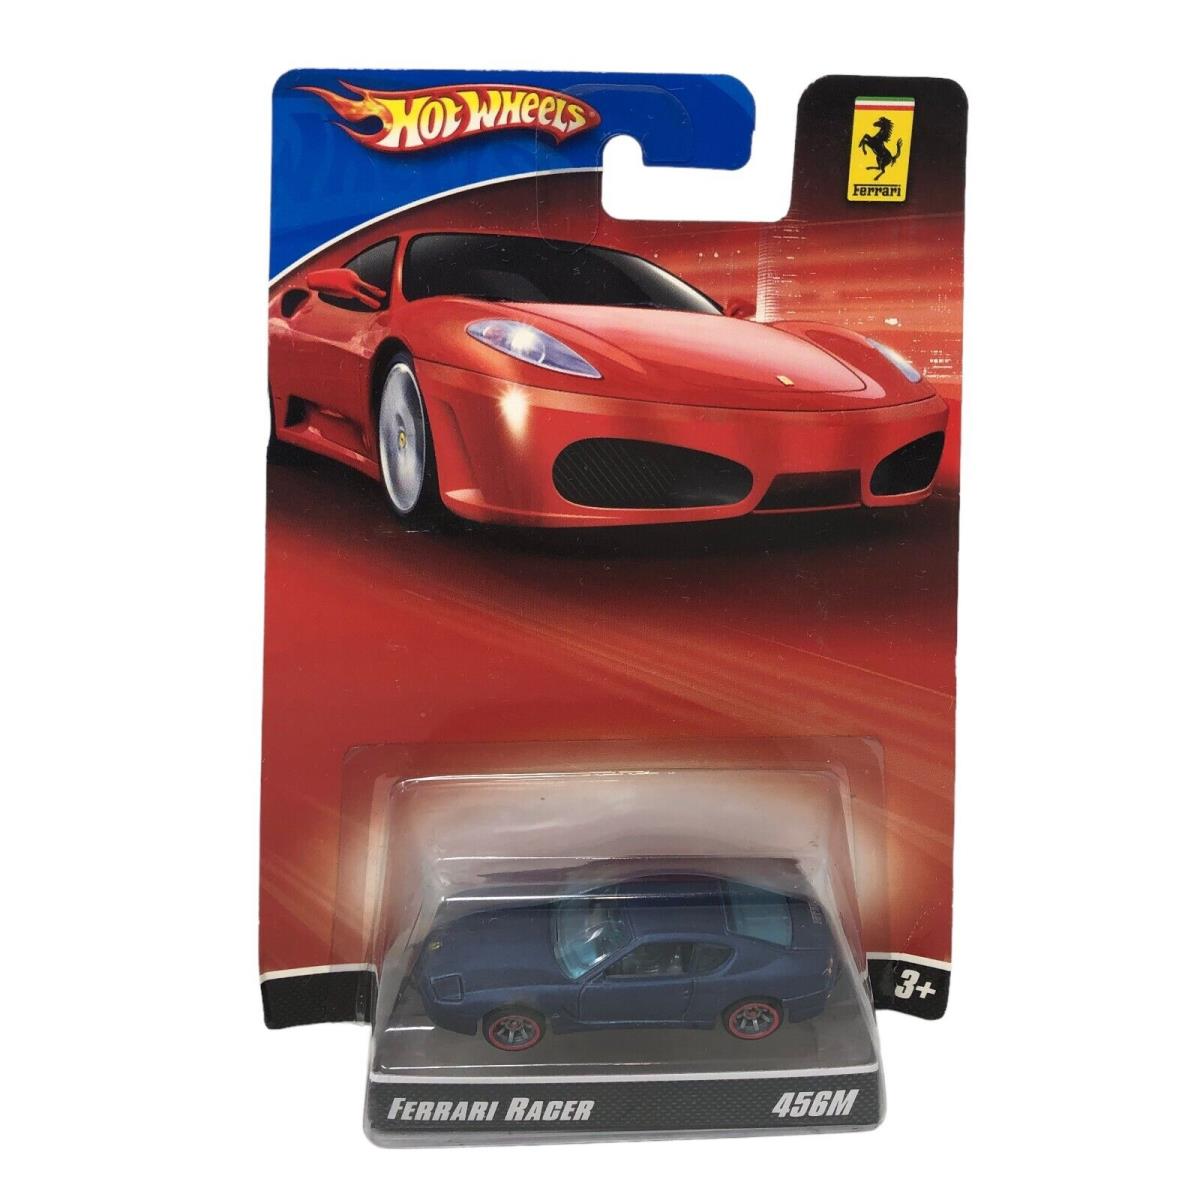 Nip Hot Wheels Ferrari Racer 456M Satin Blue Redline Tires